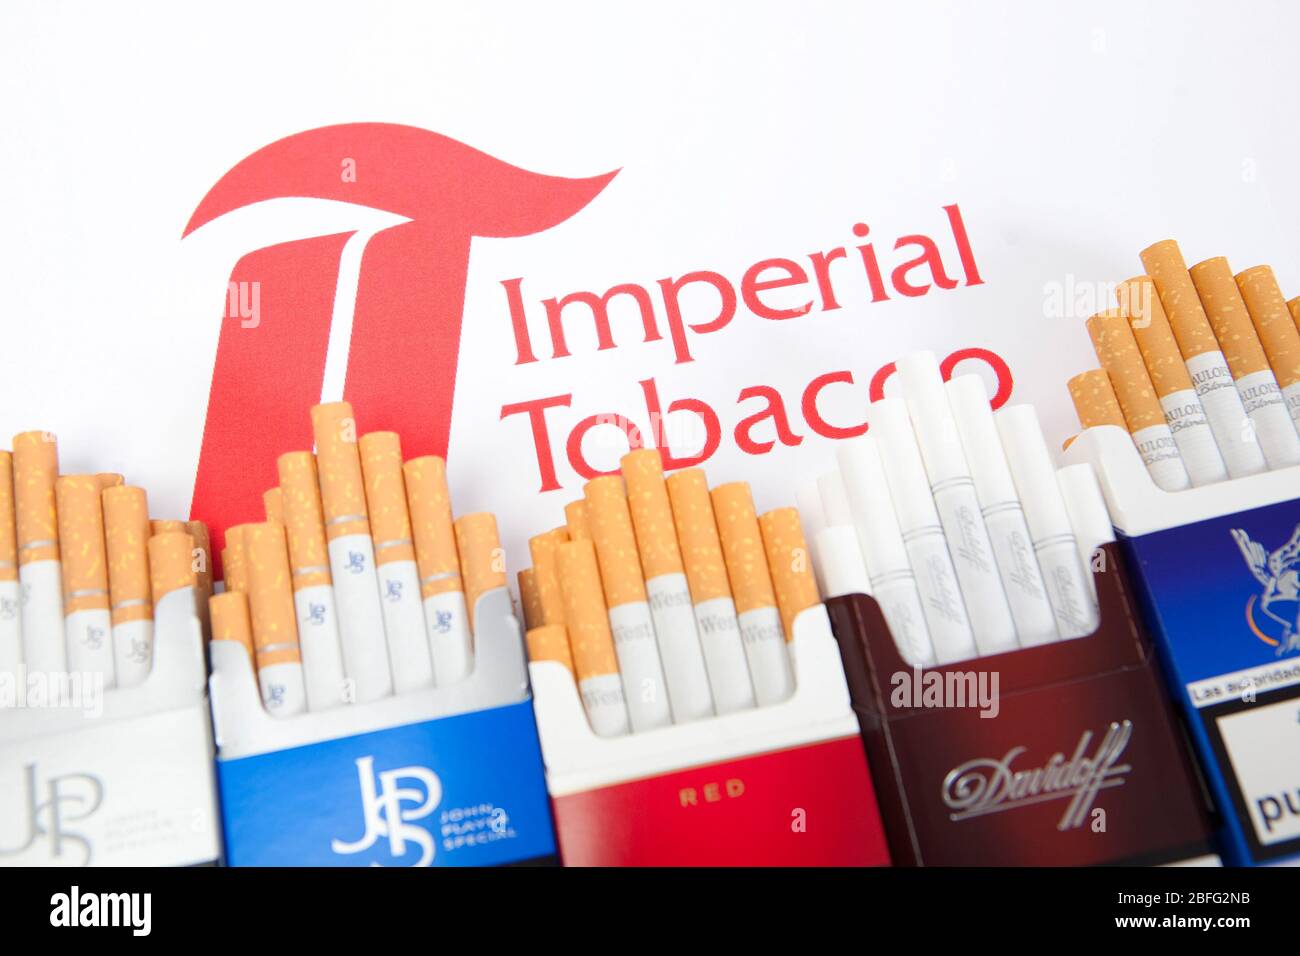 Productos de la cartera de cigarrillos del tabaco Imperial. Foto de stock